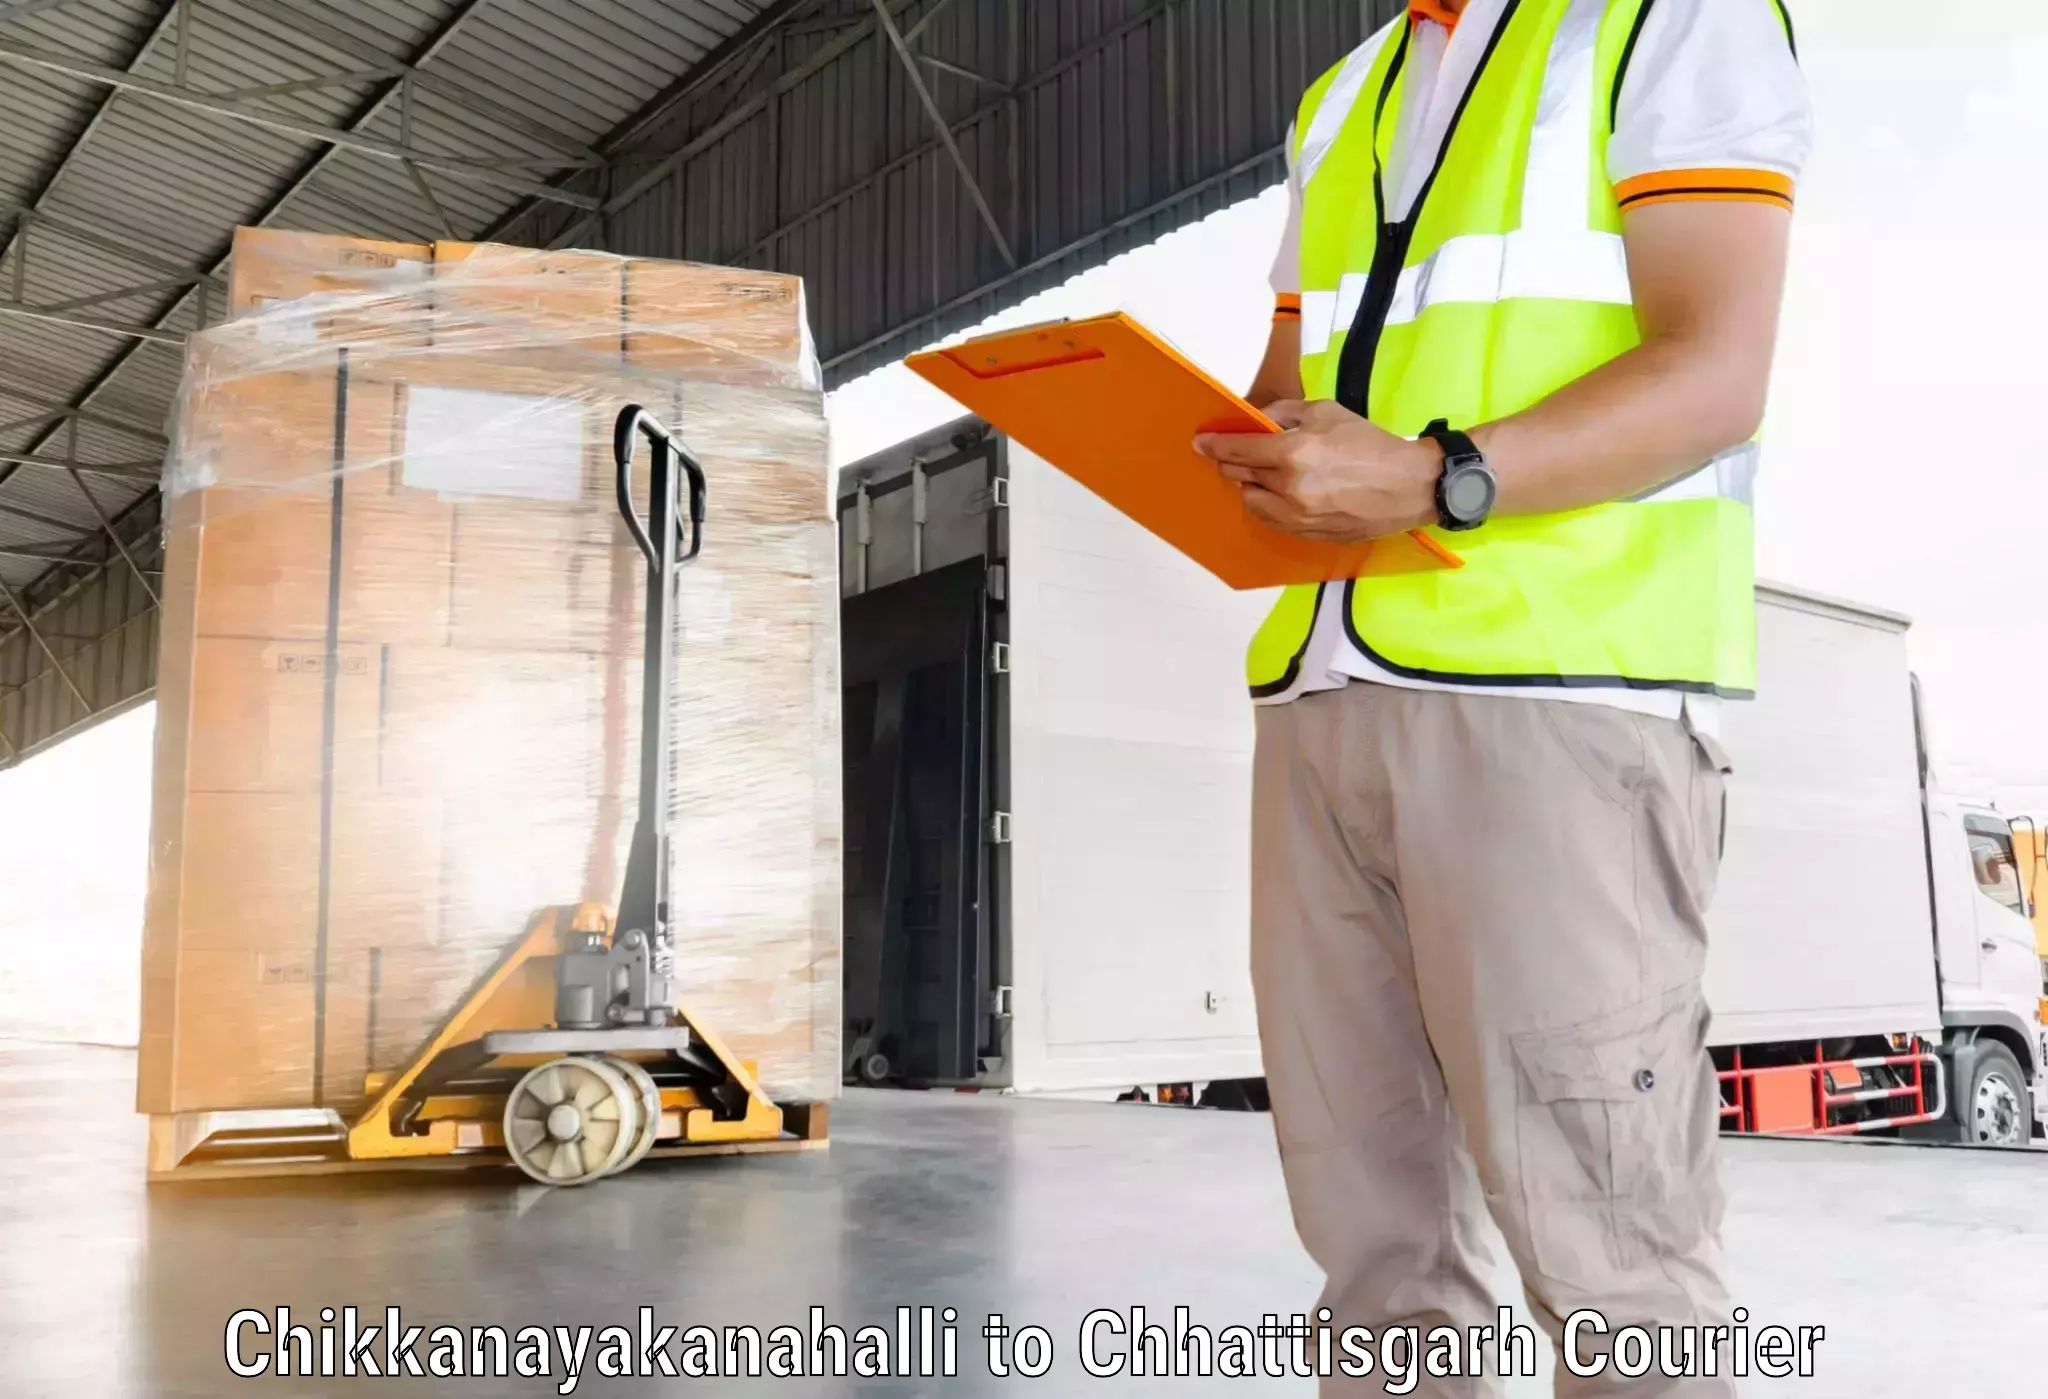 Corporate courier solutions Chikkanayakanahalli to Pendra